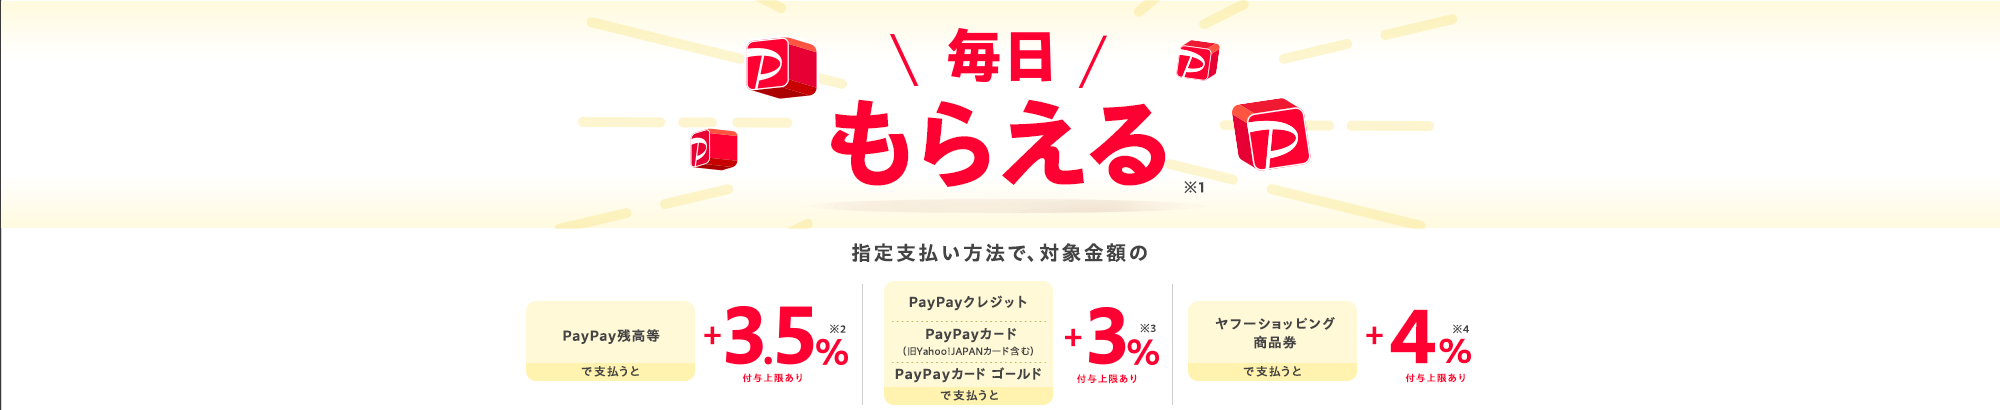 毎日もらえる※1指定支払方法で、対象金額の　PayPay残高等で支払うと　＋3.5％※2  付与上限あり　PayPayクレジット　PayPayカード（旧Yahoo! JAPANカード含む）　PayPayカード ゴールドで支払うと　＋3％※3 付与上限あり　ヤフーショッピング商品券で支払うと＋4％※4付与上限あり